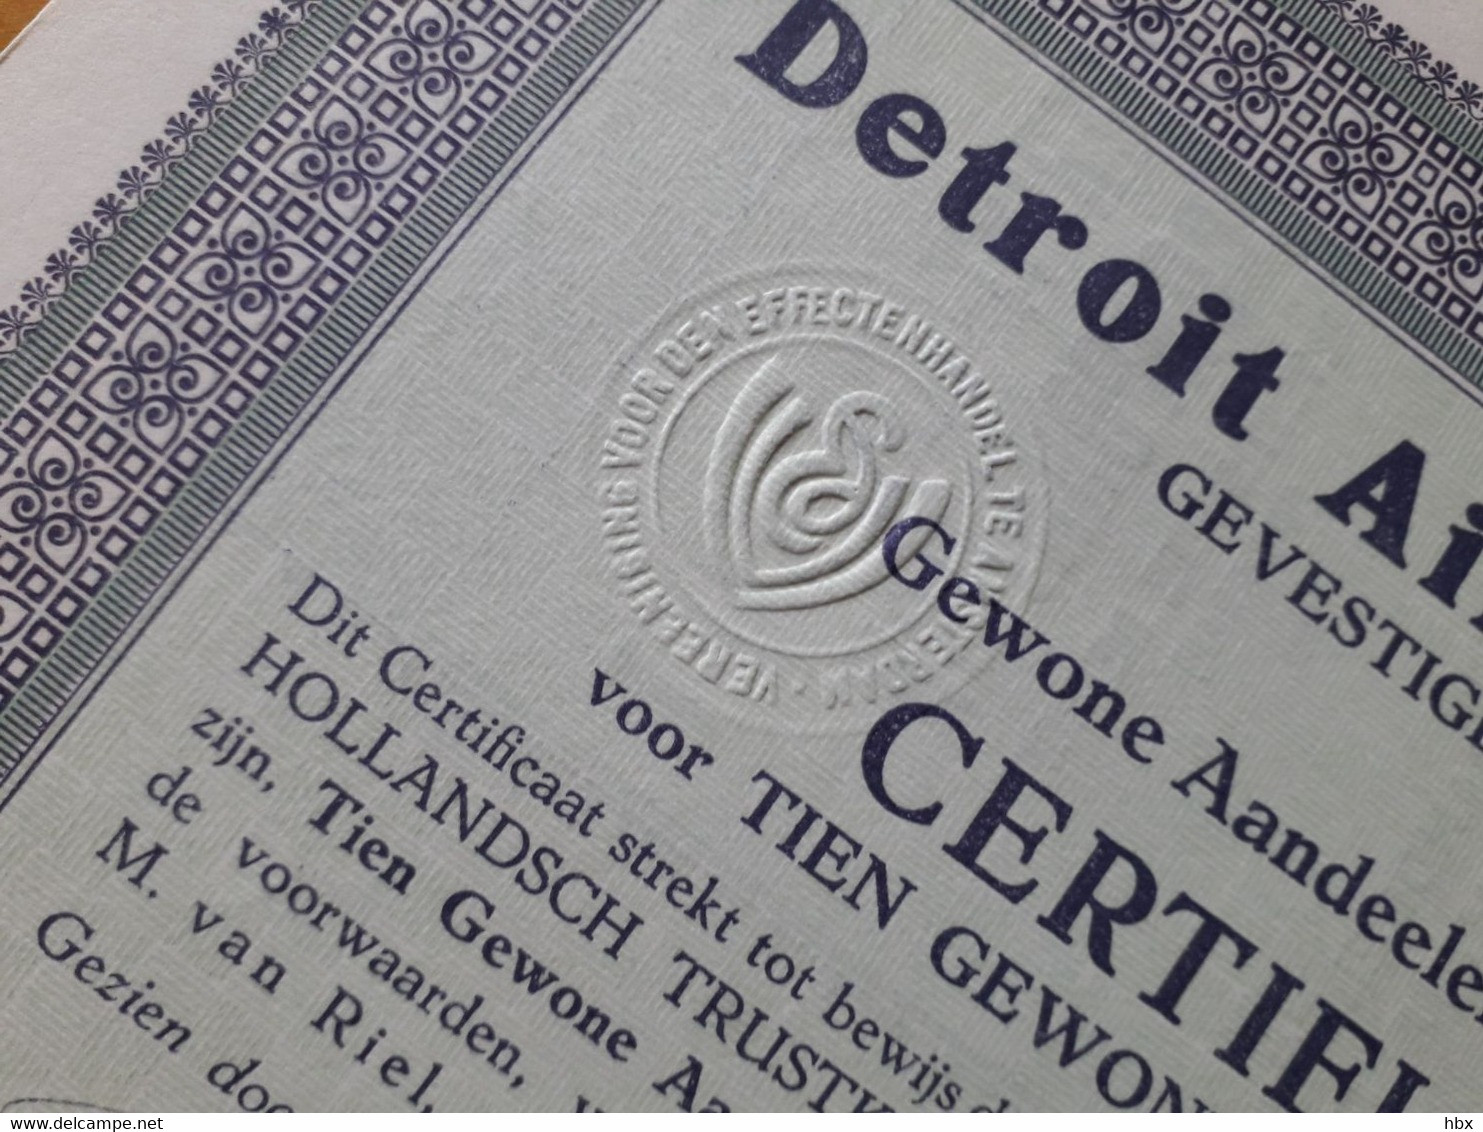 Detroit Aircraft Corporation - 1931 - Fliegerei